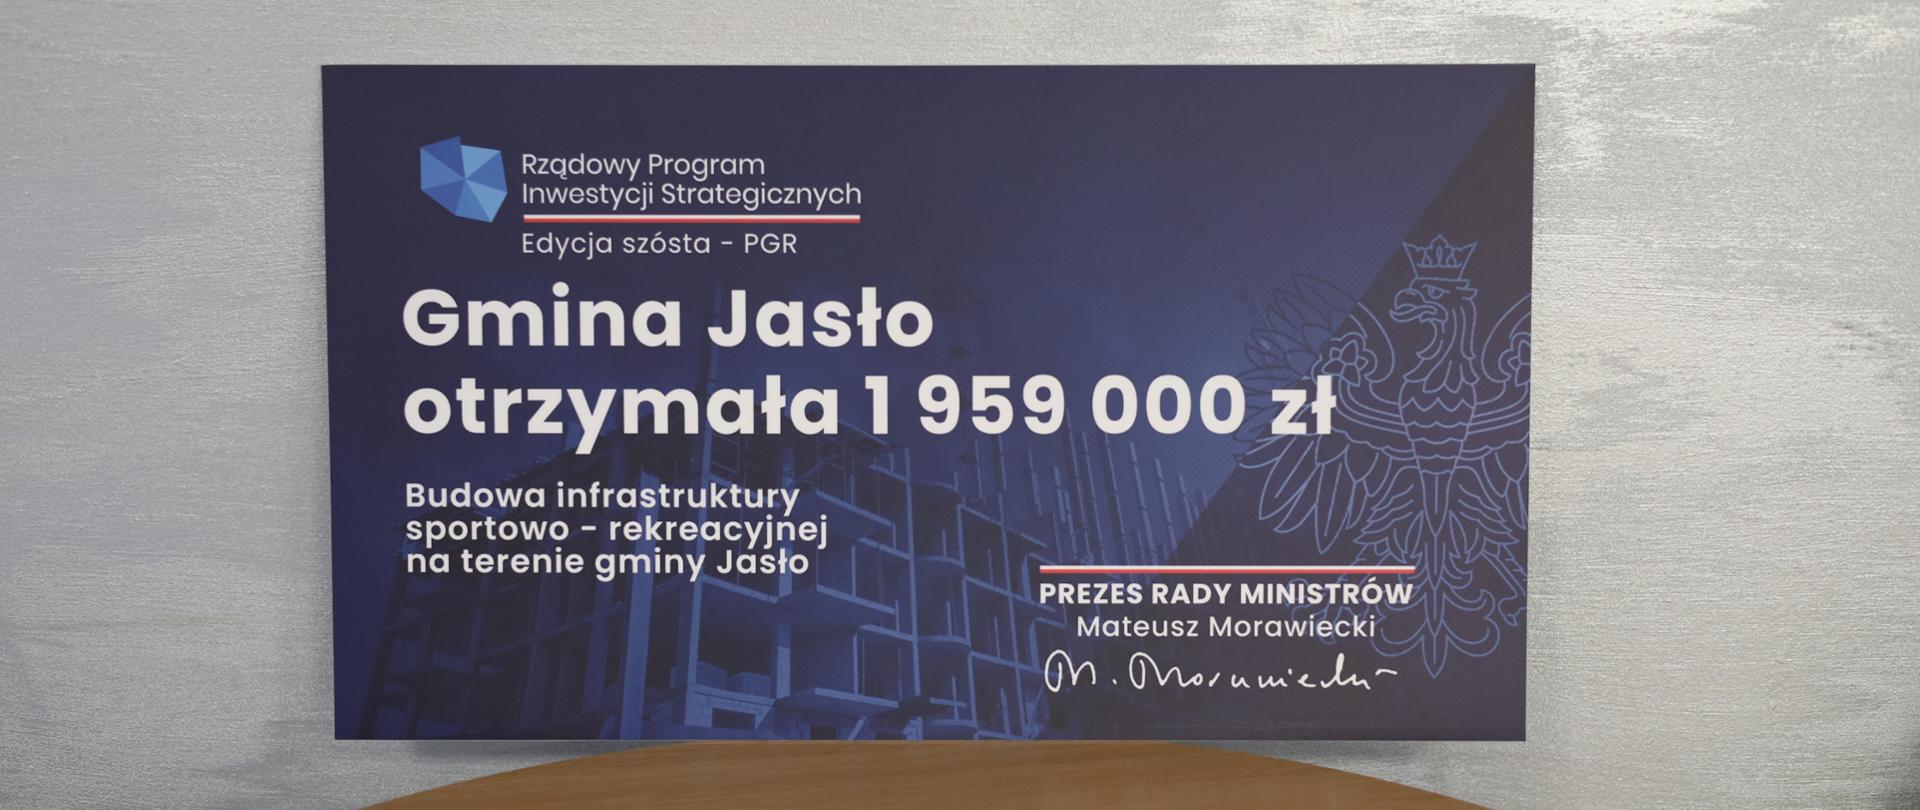 Budowa infrastruktury sportowo-rekreacyjnej na terenie gminy Jasło